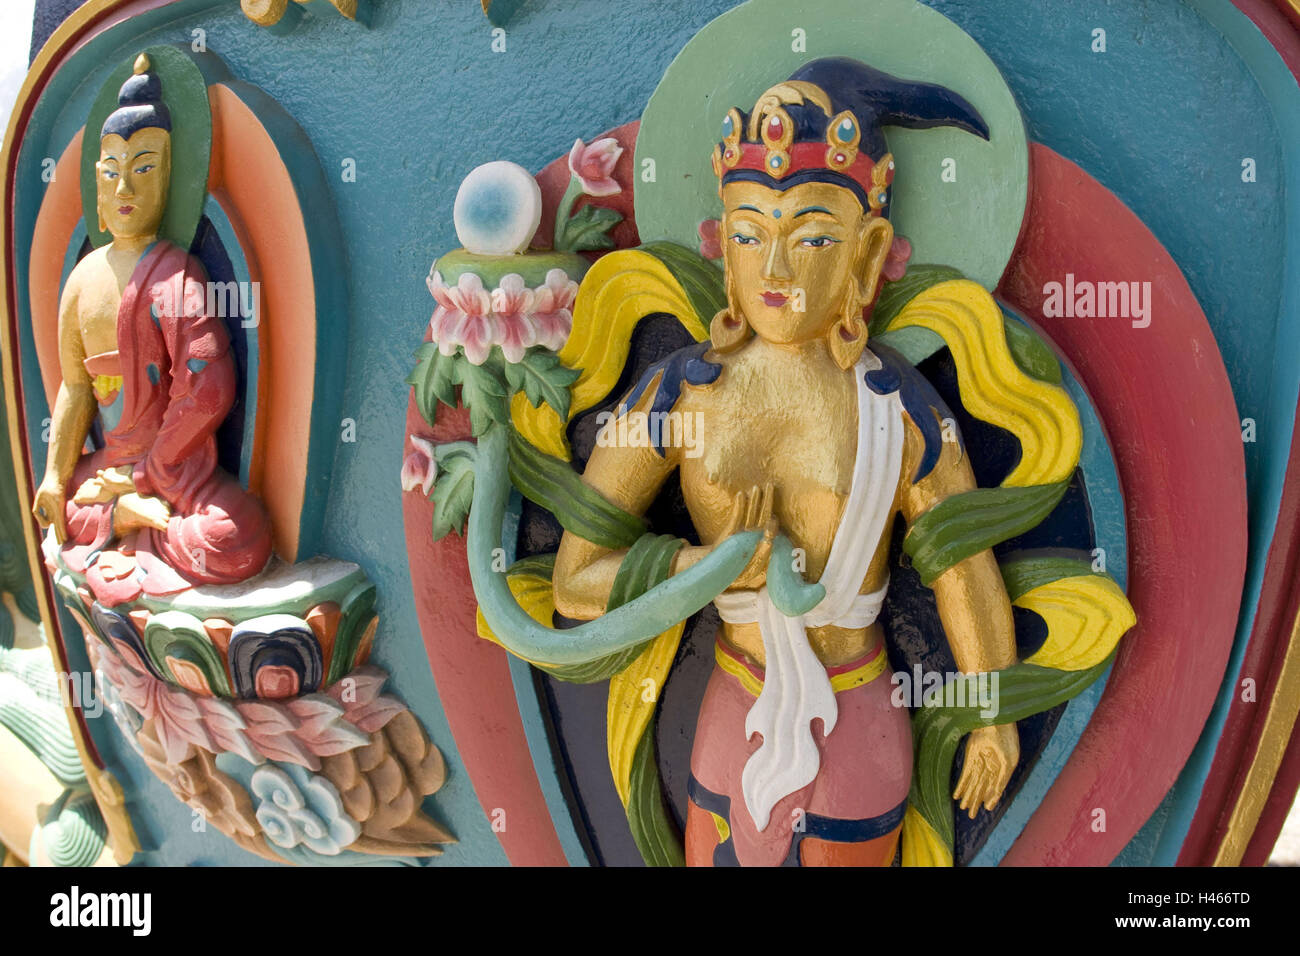 Nepal, Solo Khumbu, the Himalaya, Tengboche Monastery, wooden figures, detail, Stock Photo